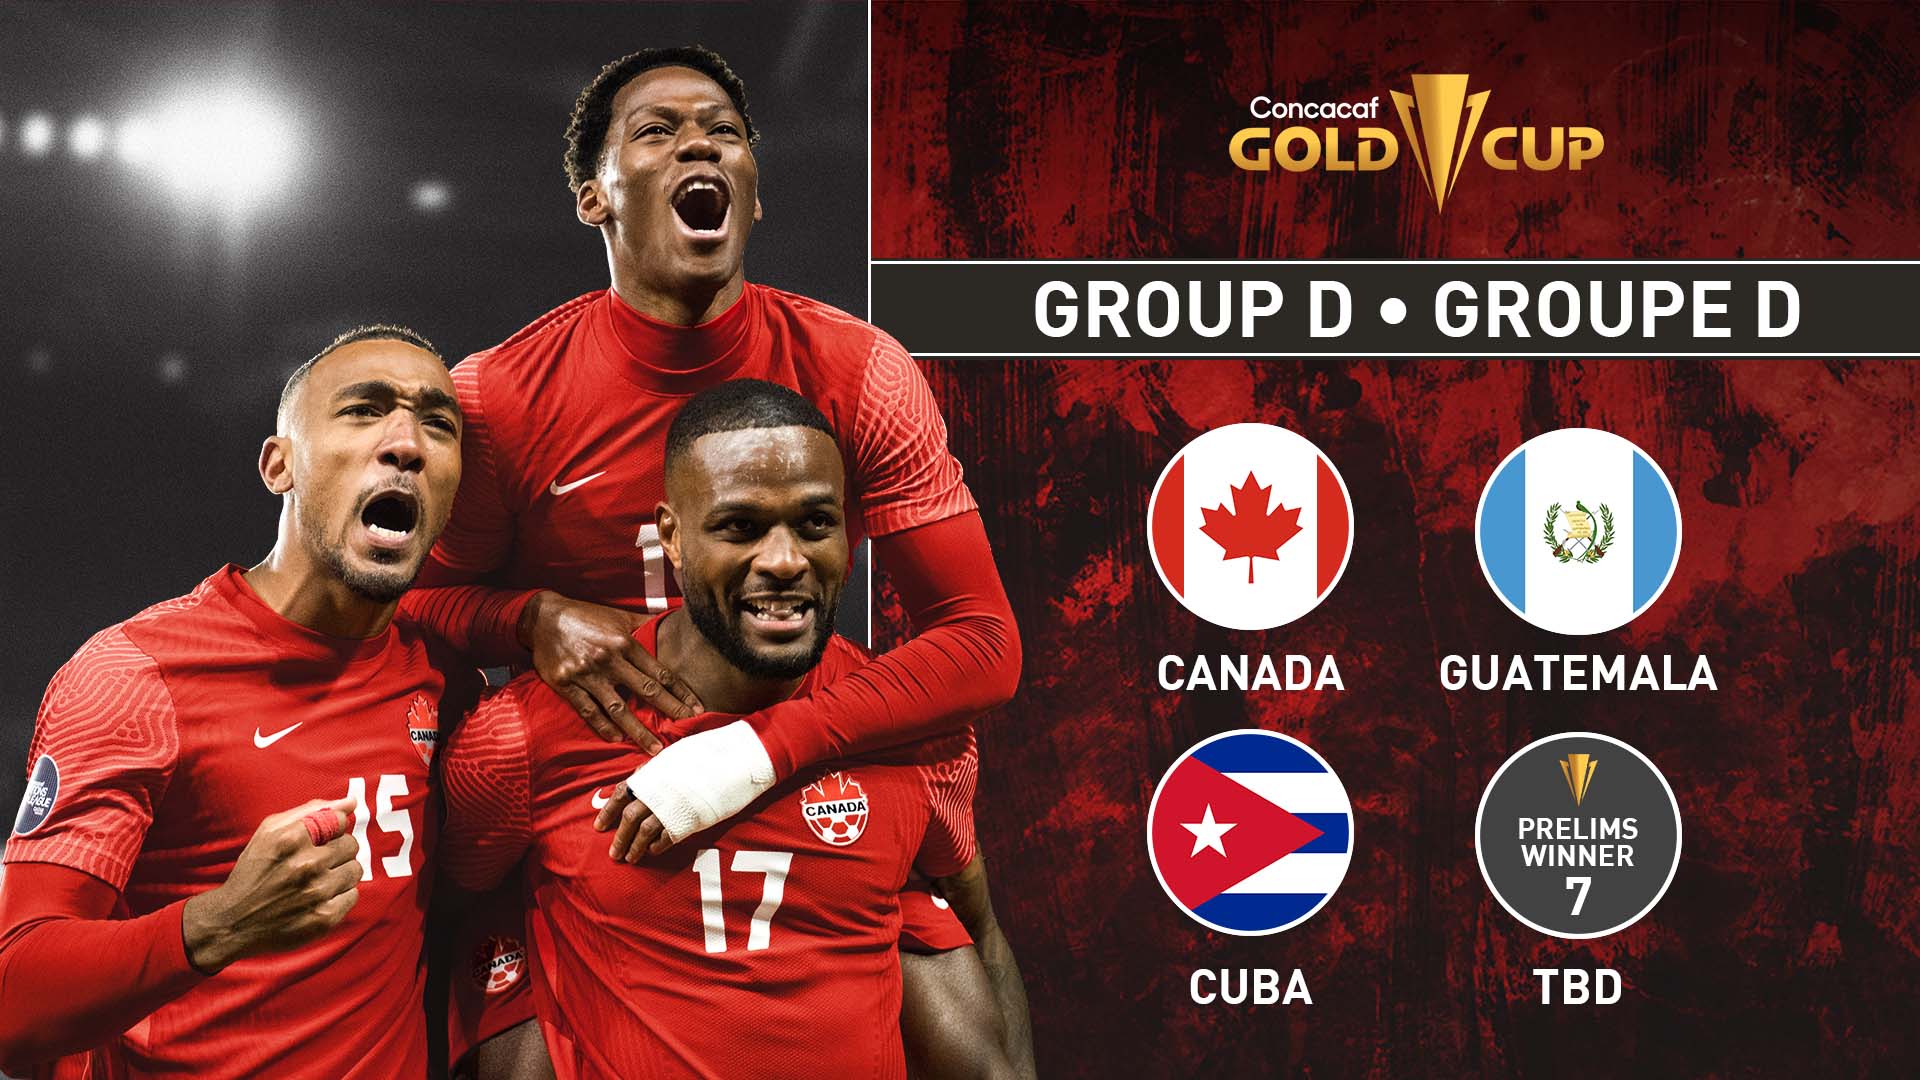 Gold Cup Group D result, recap: Guatemala 1, Cuba 0